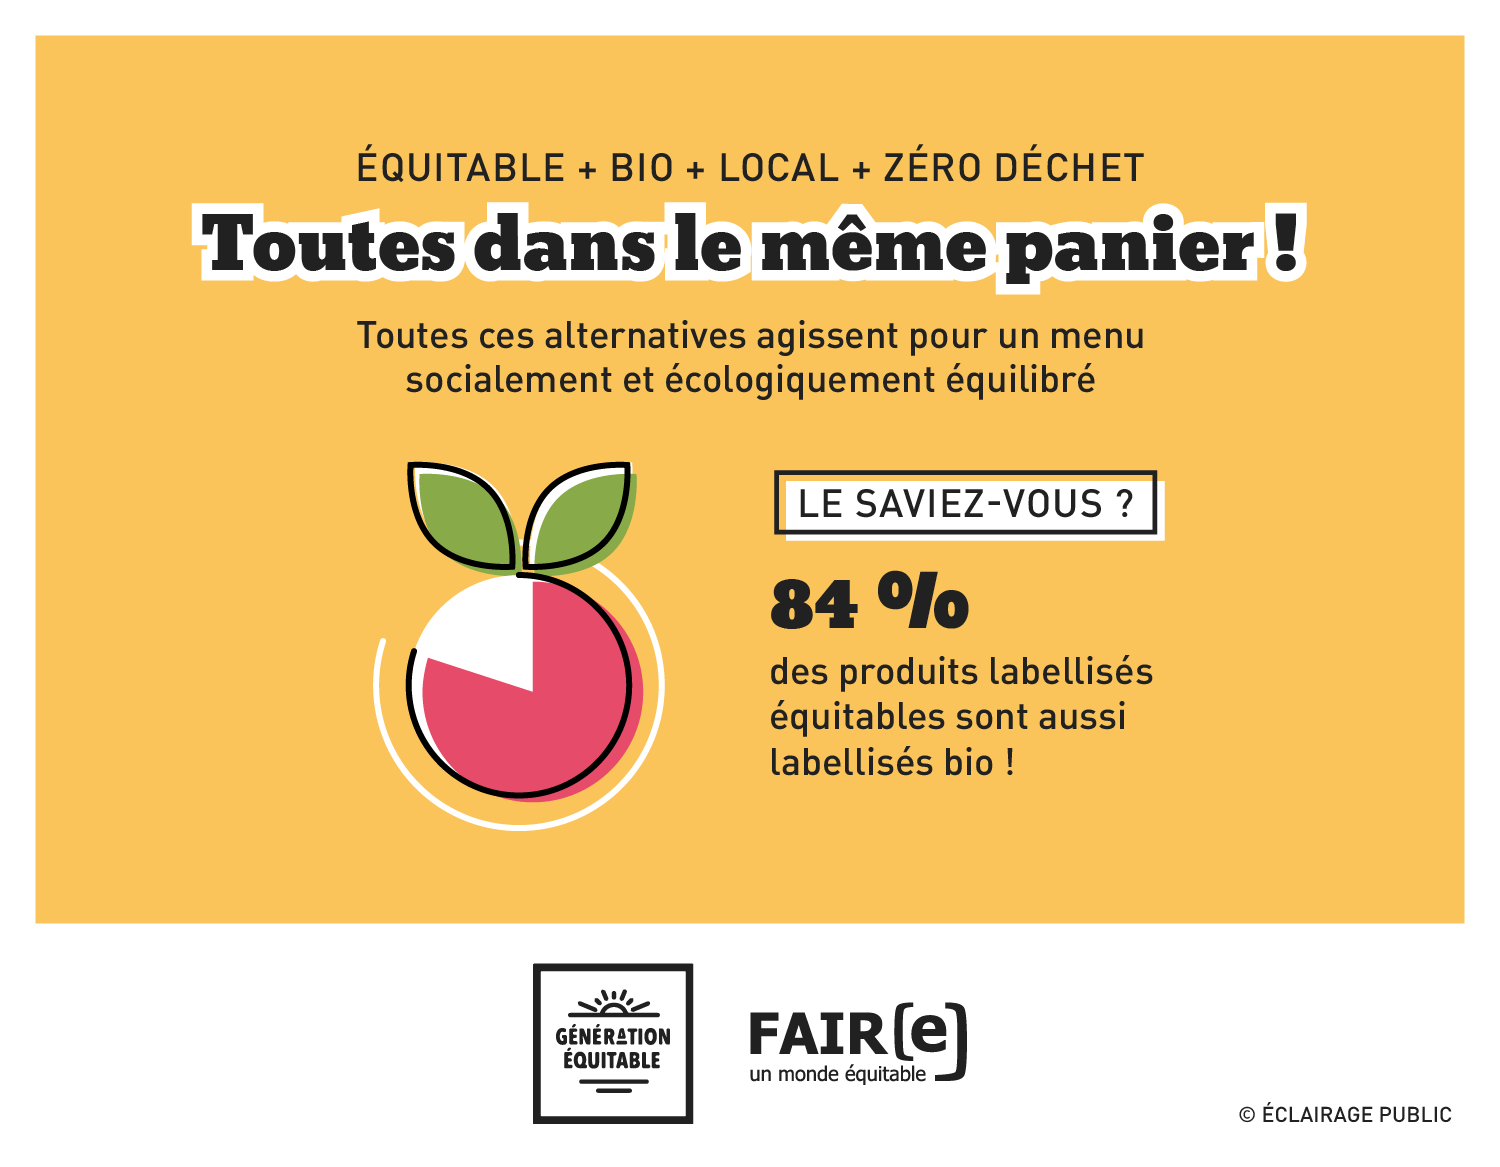 FAIRE-Commerce-equitable-Toutes-dans-le-meme-panier-Infographie-ECLAIRAGE-PUBLIC-1500